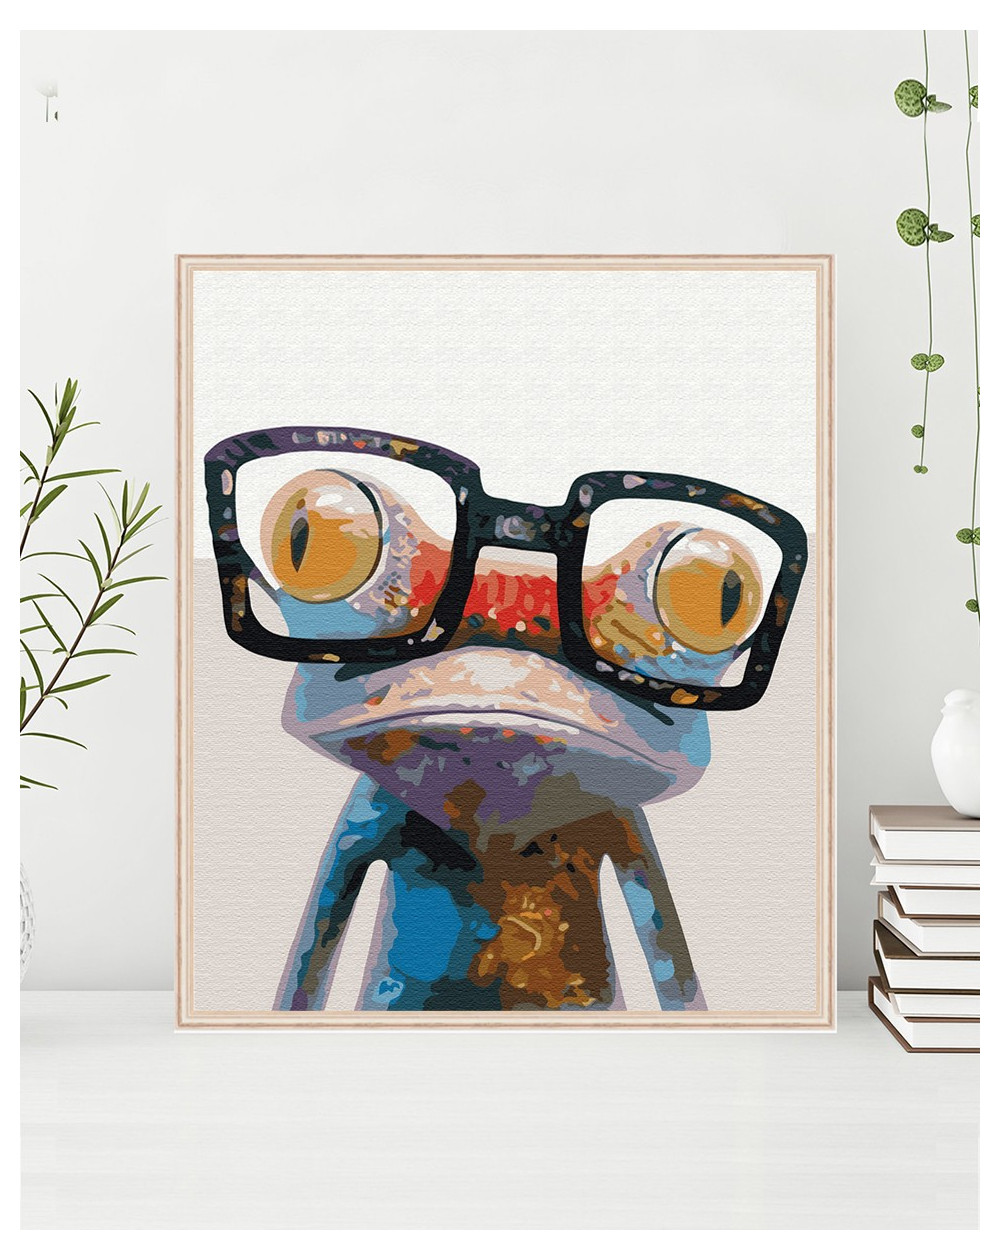 Żaba w okularach